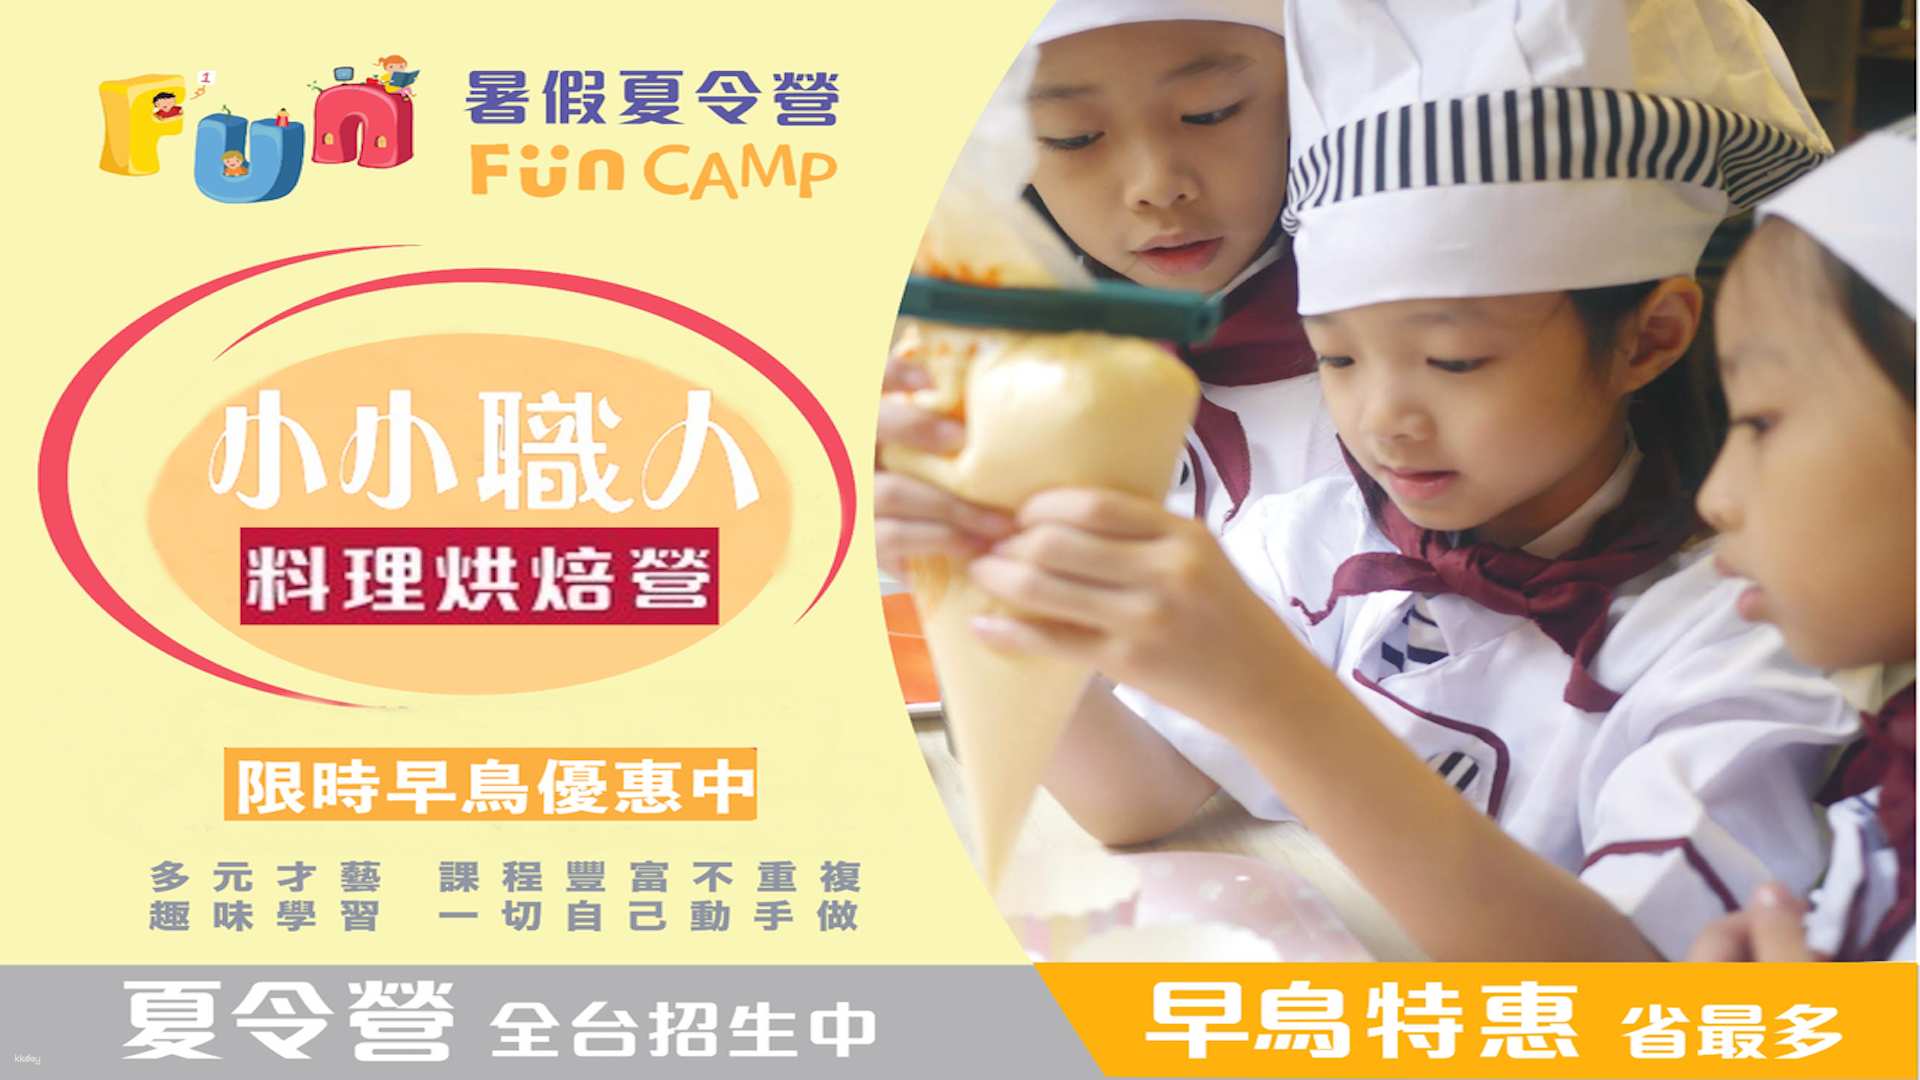 多地區-Fun Camp| 小小職人料理烘焙營